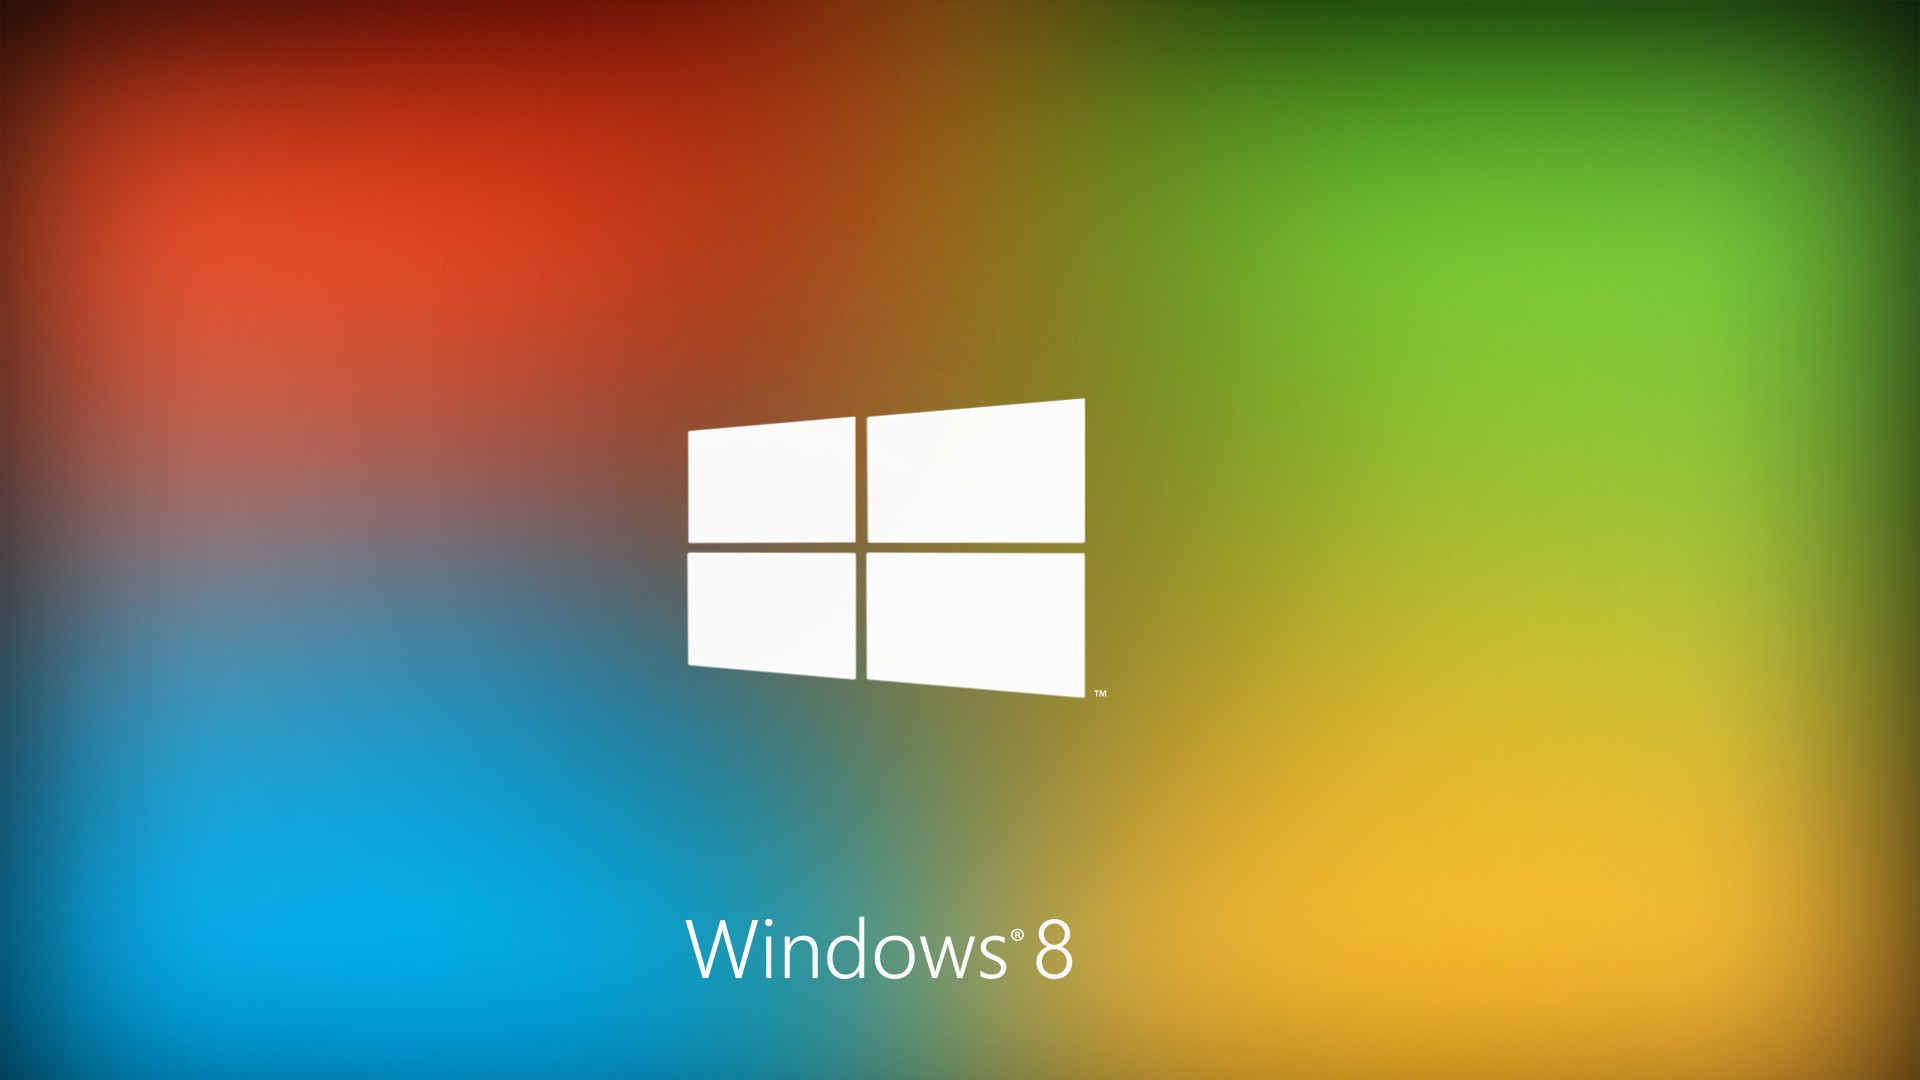 Best Windows 8 Logo 2013 HD Wallpaper of Windows   hdwallpaper2013com